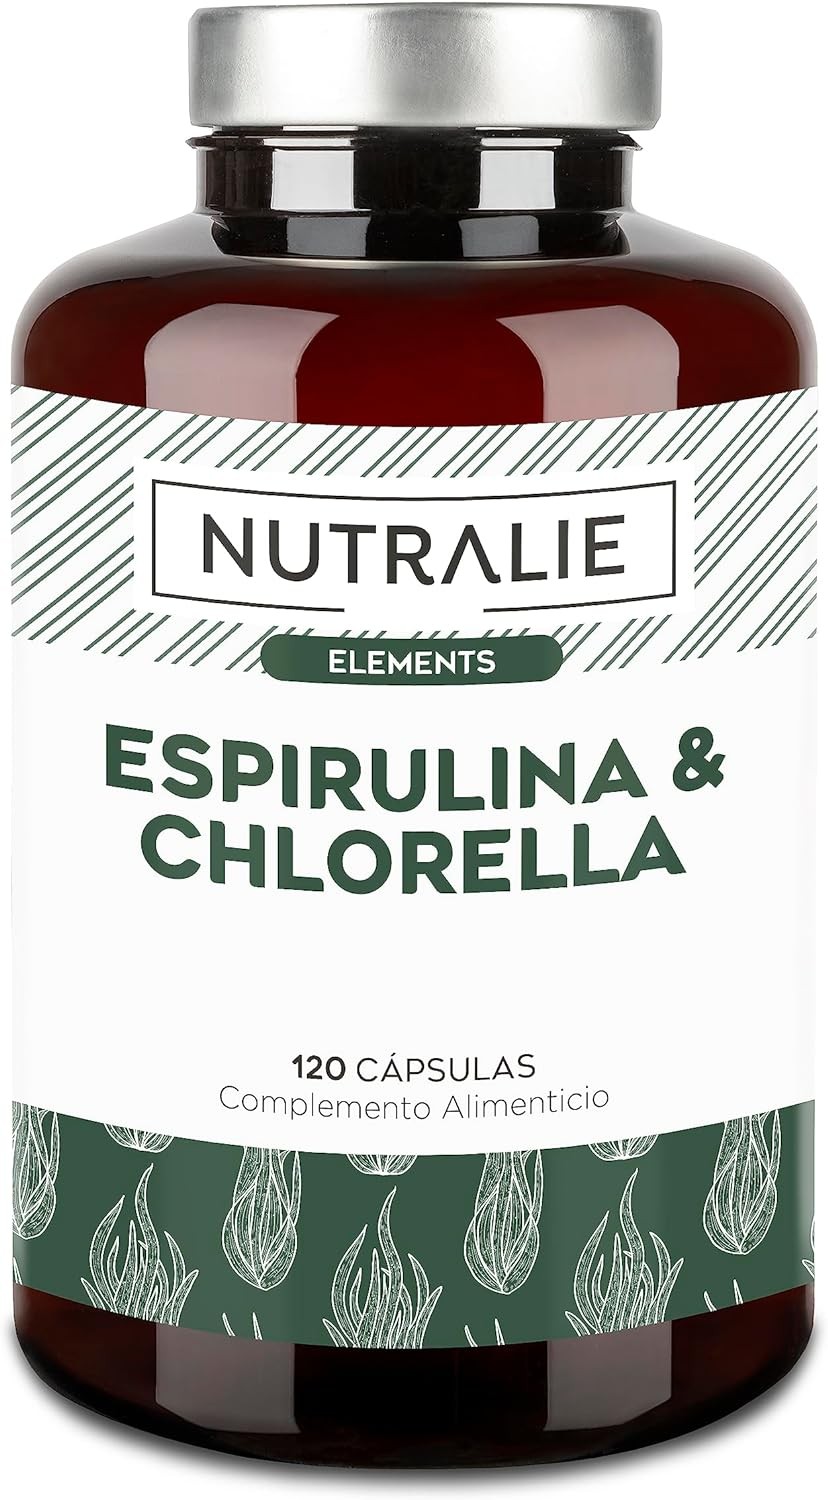 Nutralie Espirulina BIO & Chlorella fuerza y energía, 180 cápsulas